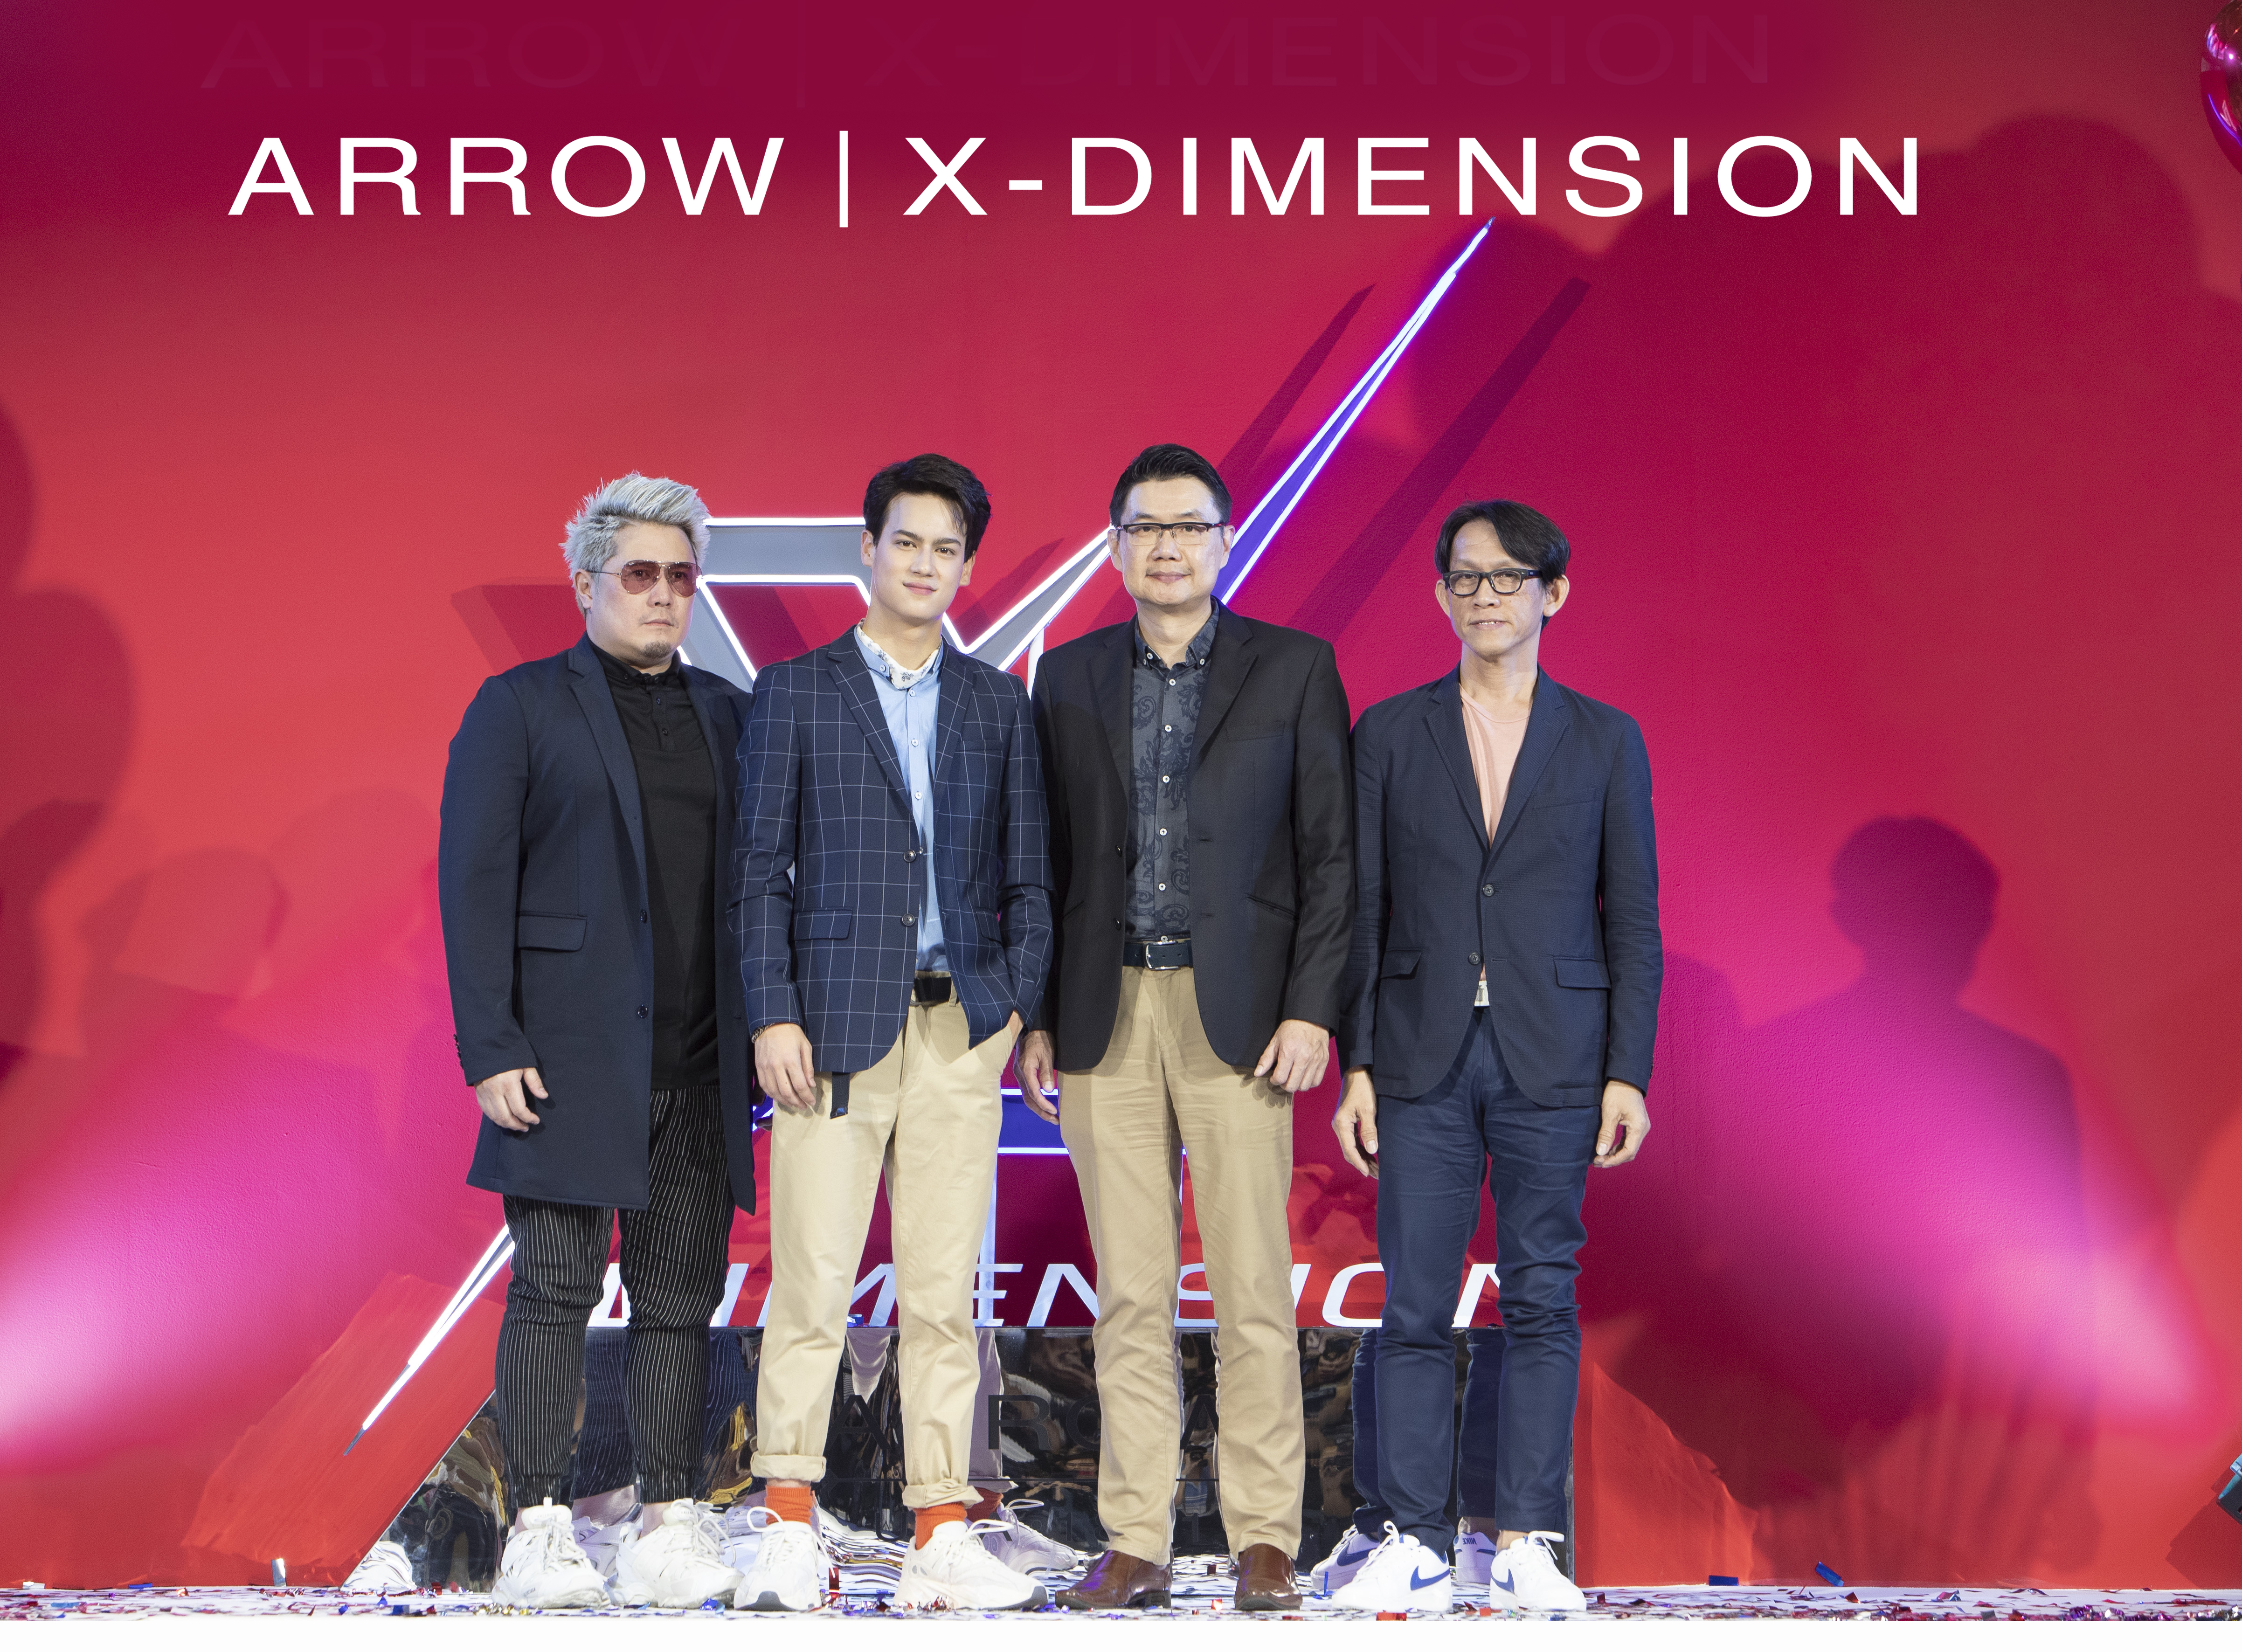 ARROW X-DIMENSION : GIFT & CELEBRATION เปิดคอลเลคชั่นใหม่ร่วมเฉลิมฉลองเทศกาลแห่งความสุข